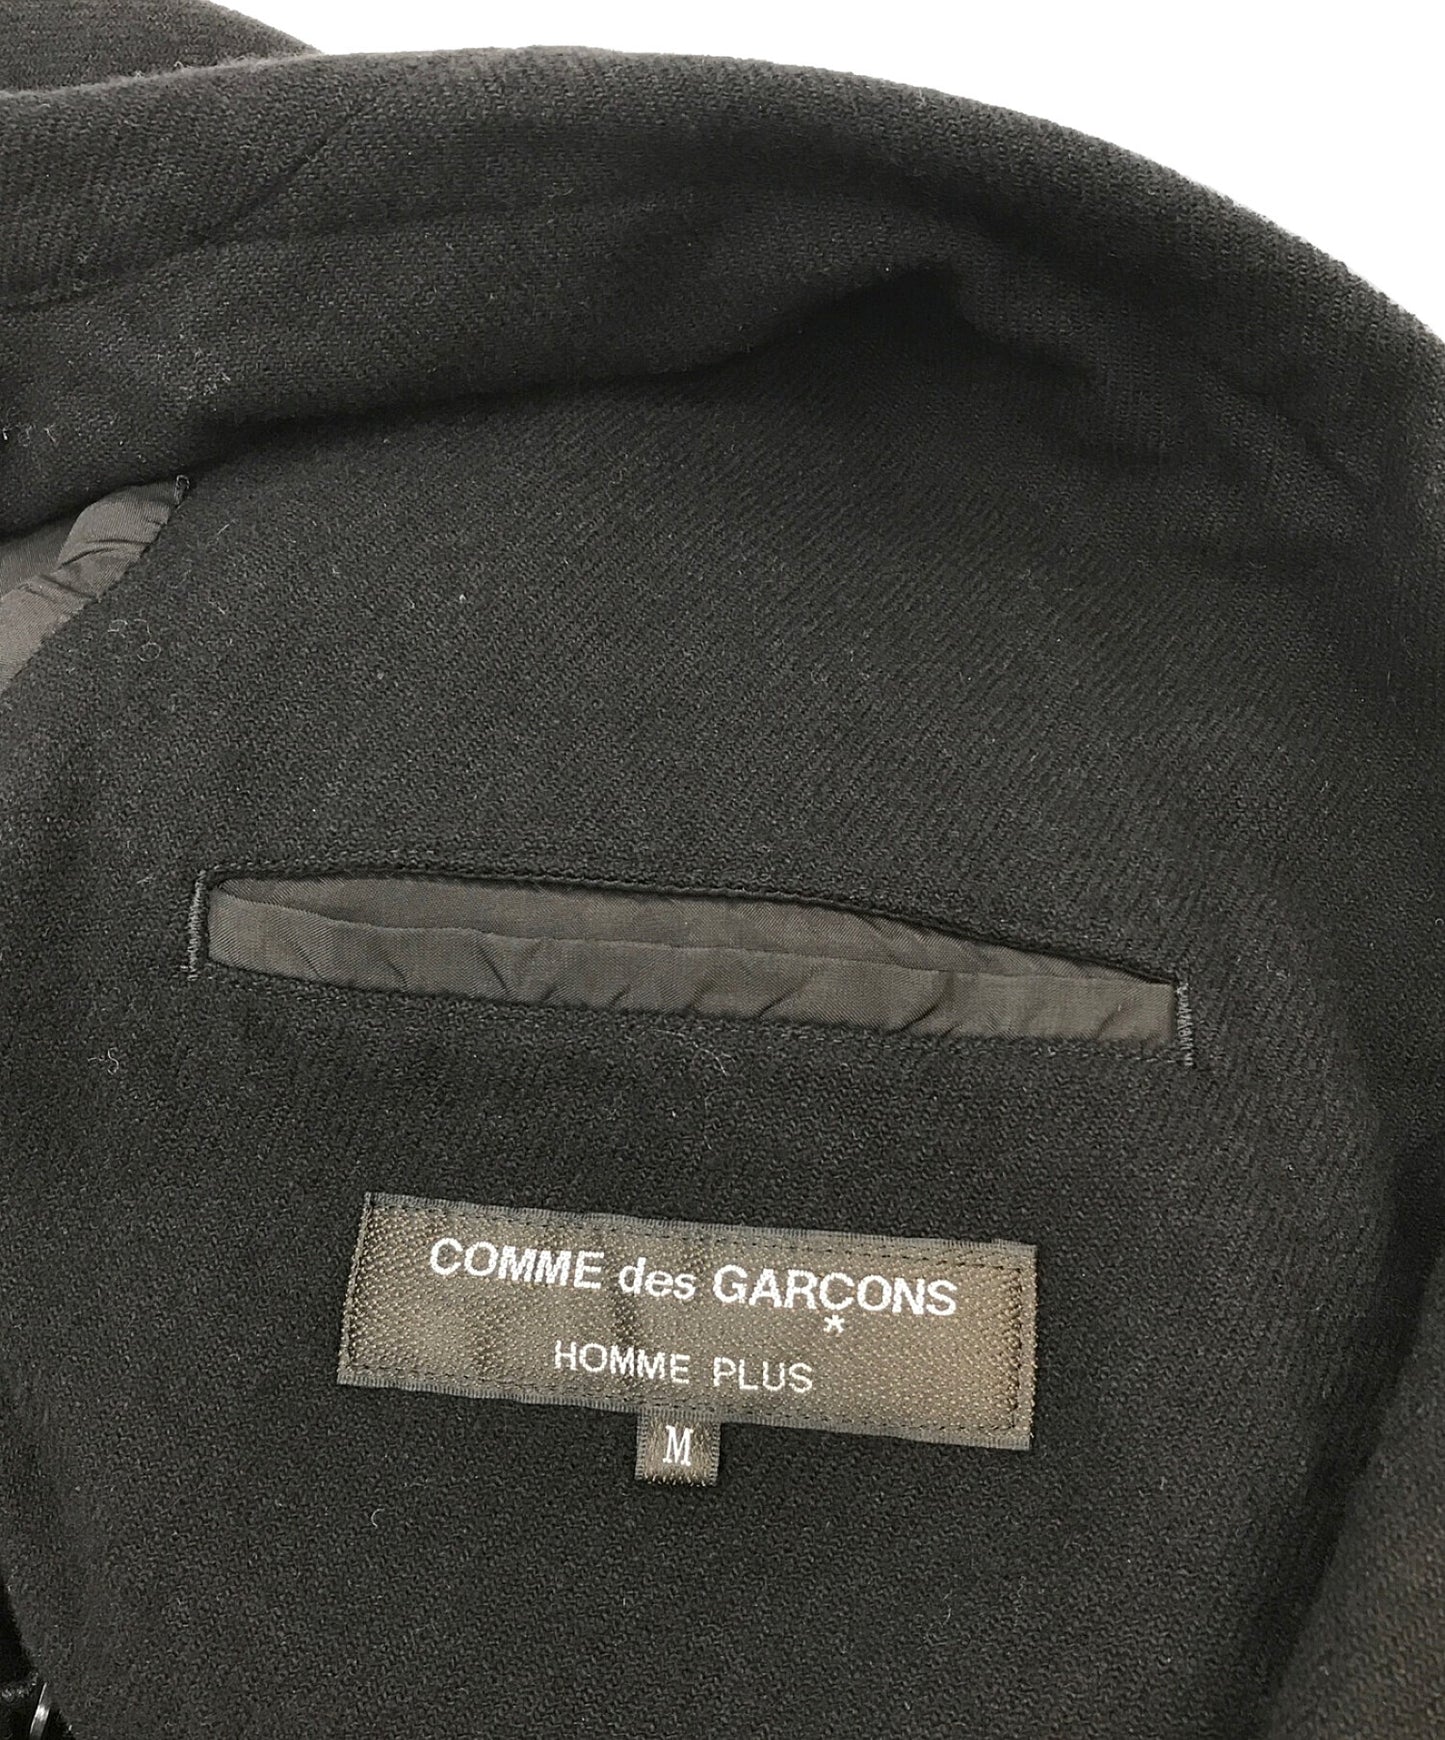 Comme des Garcons Homme Plus×Scott Hove Back Design Design羊毛裁缝夹克PT-J049